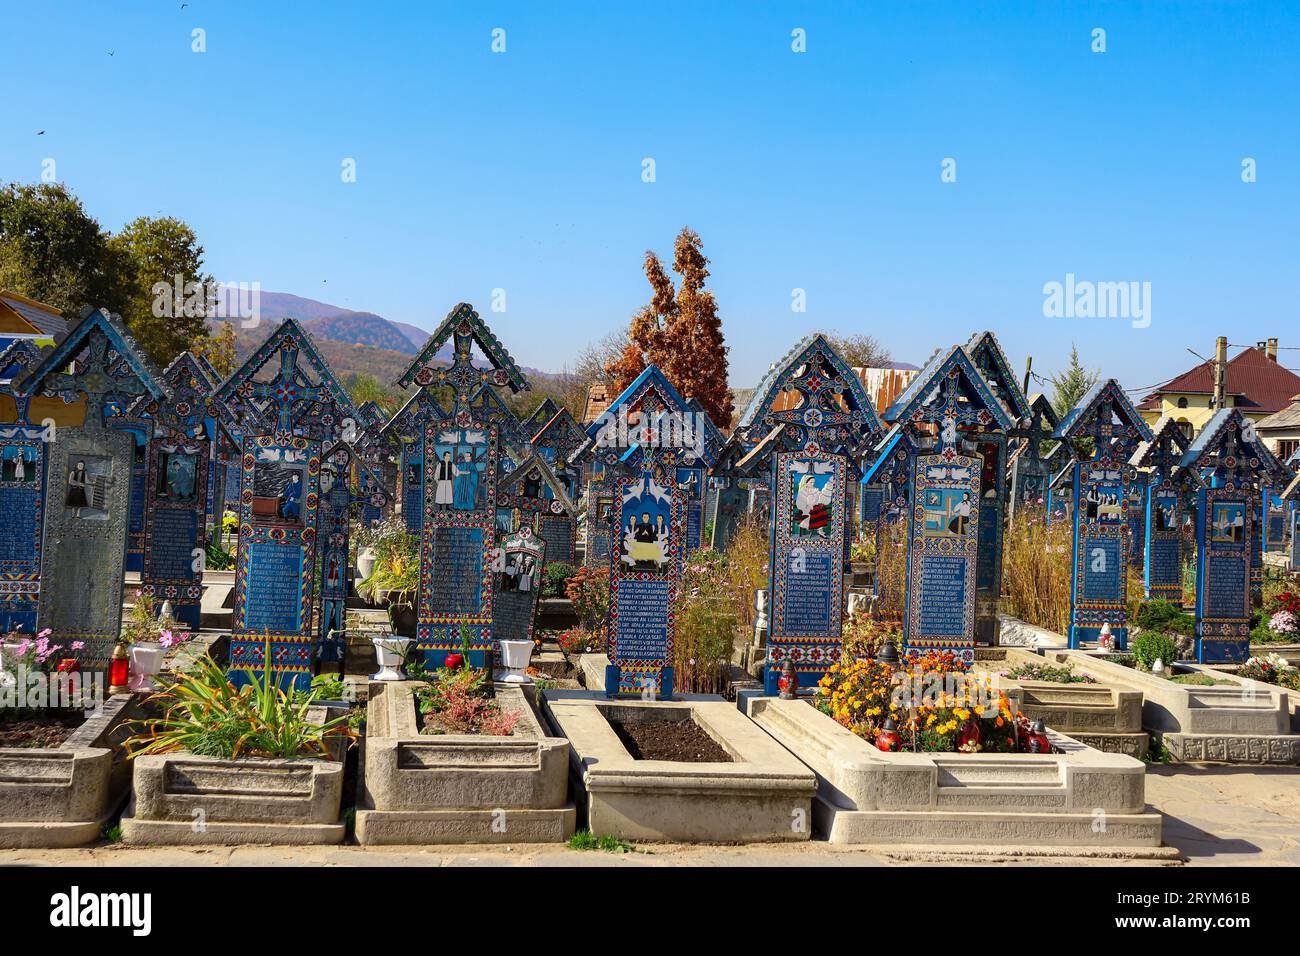 Cimitero delle lapidi di Merry Cemetery con dipinti colorati e ingenui che descrivono le persone sepolte. Elencata come una delle sette meraviglie della Romania Foto Stock